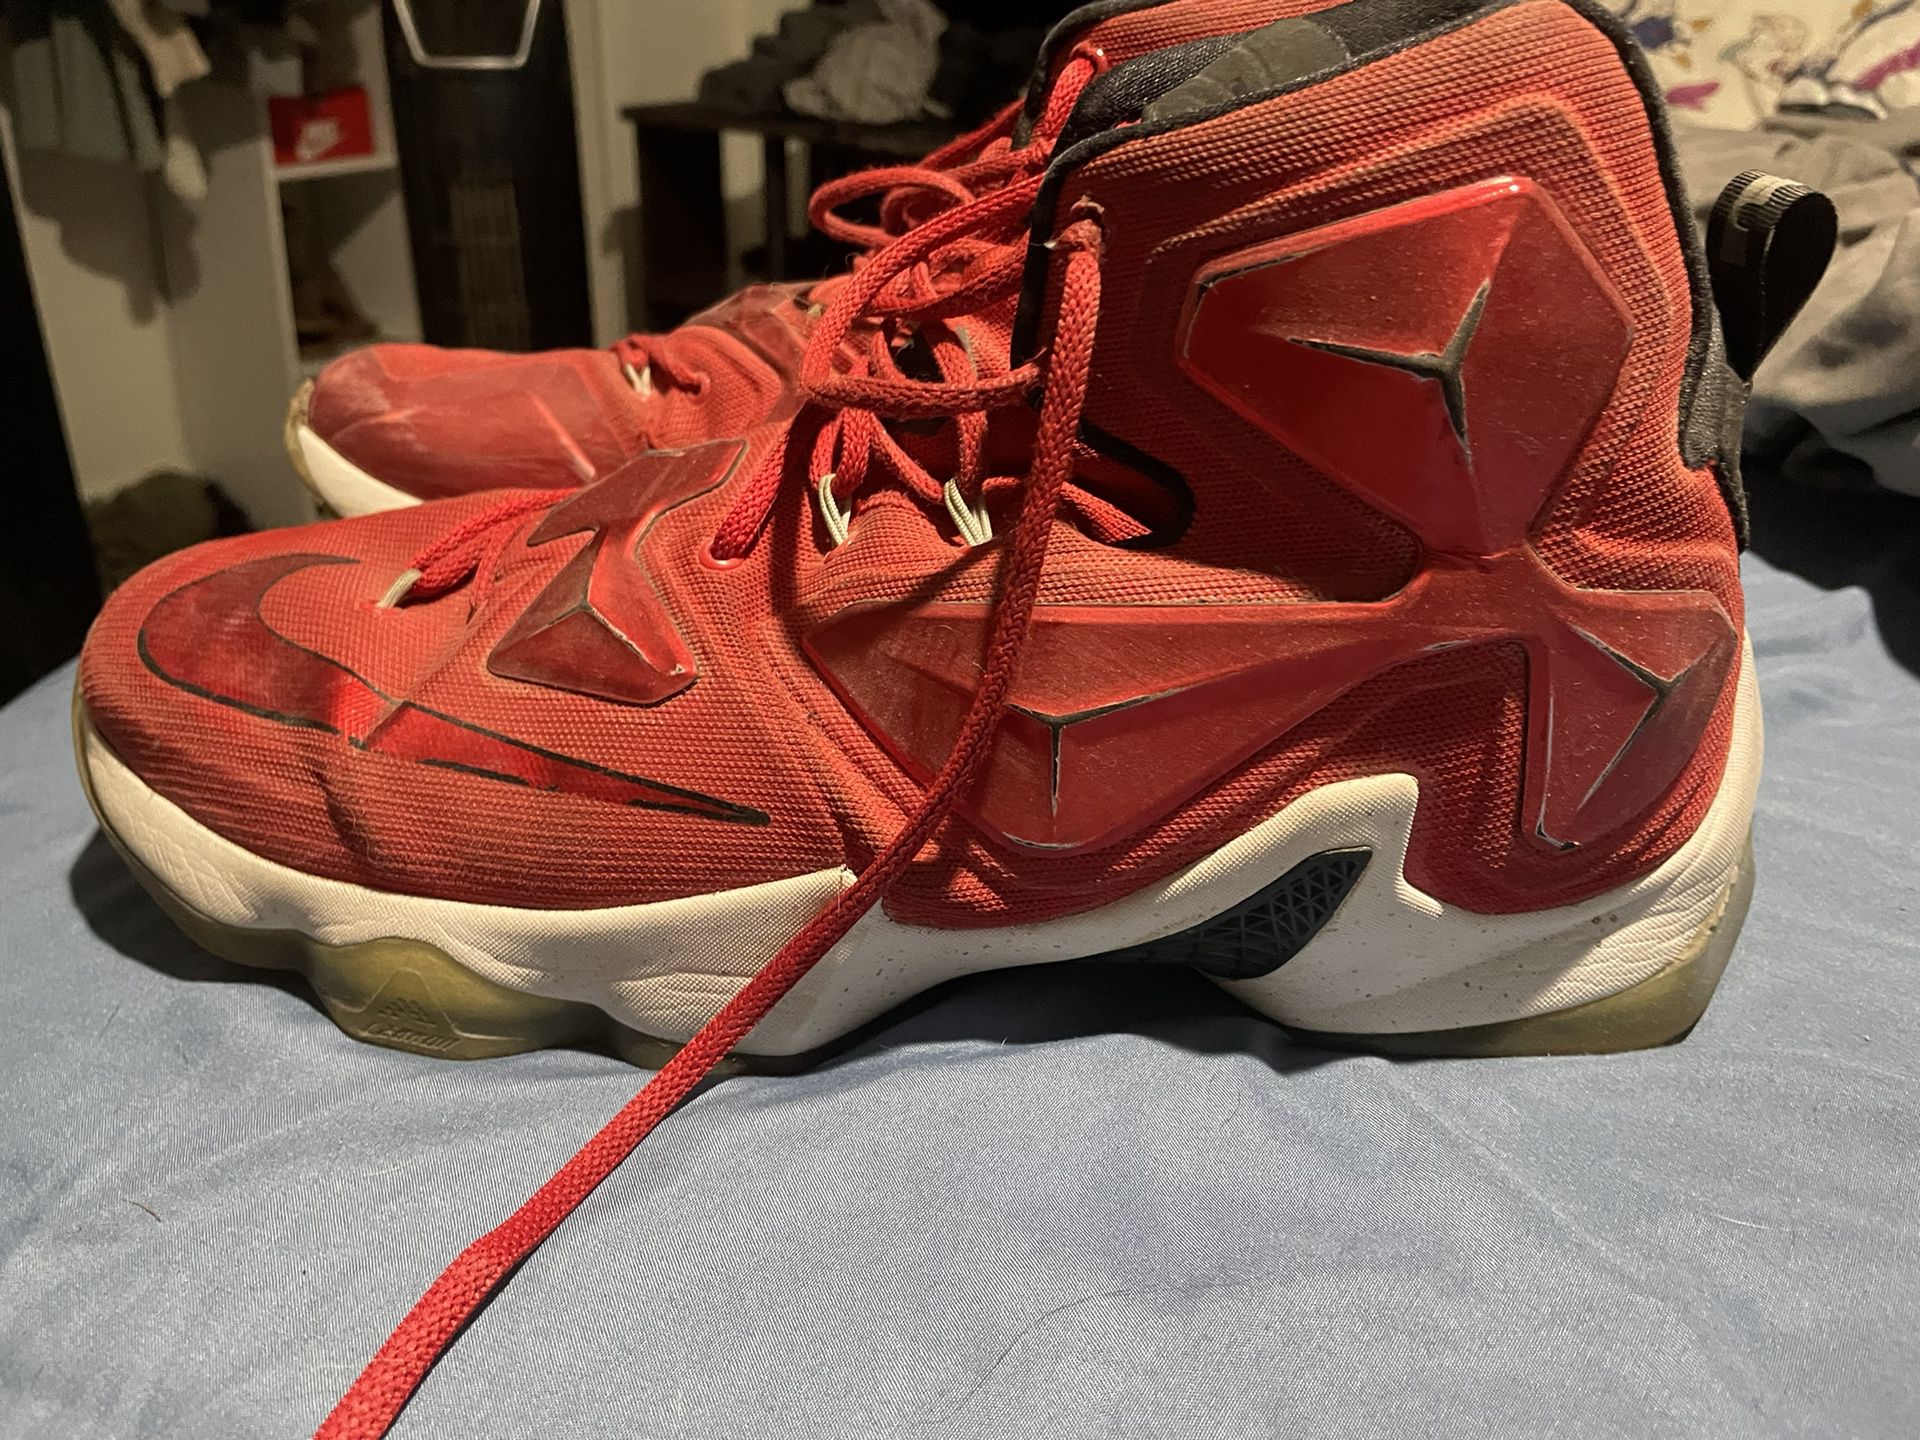 Lebron Nike Shoes Size 13